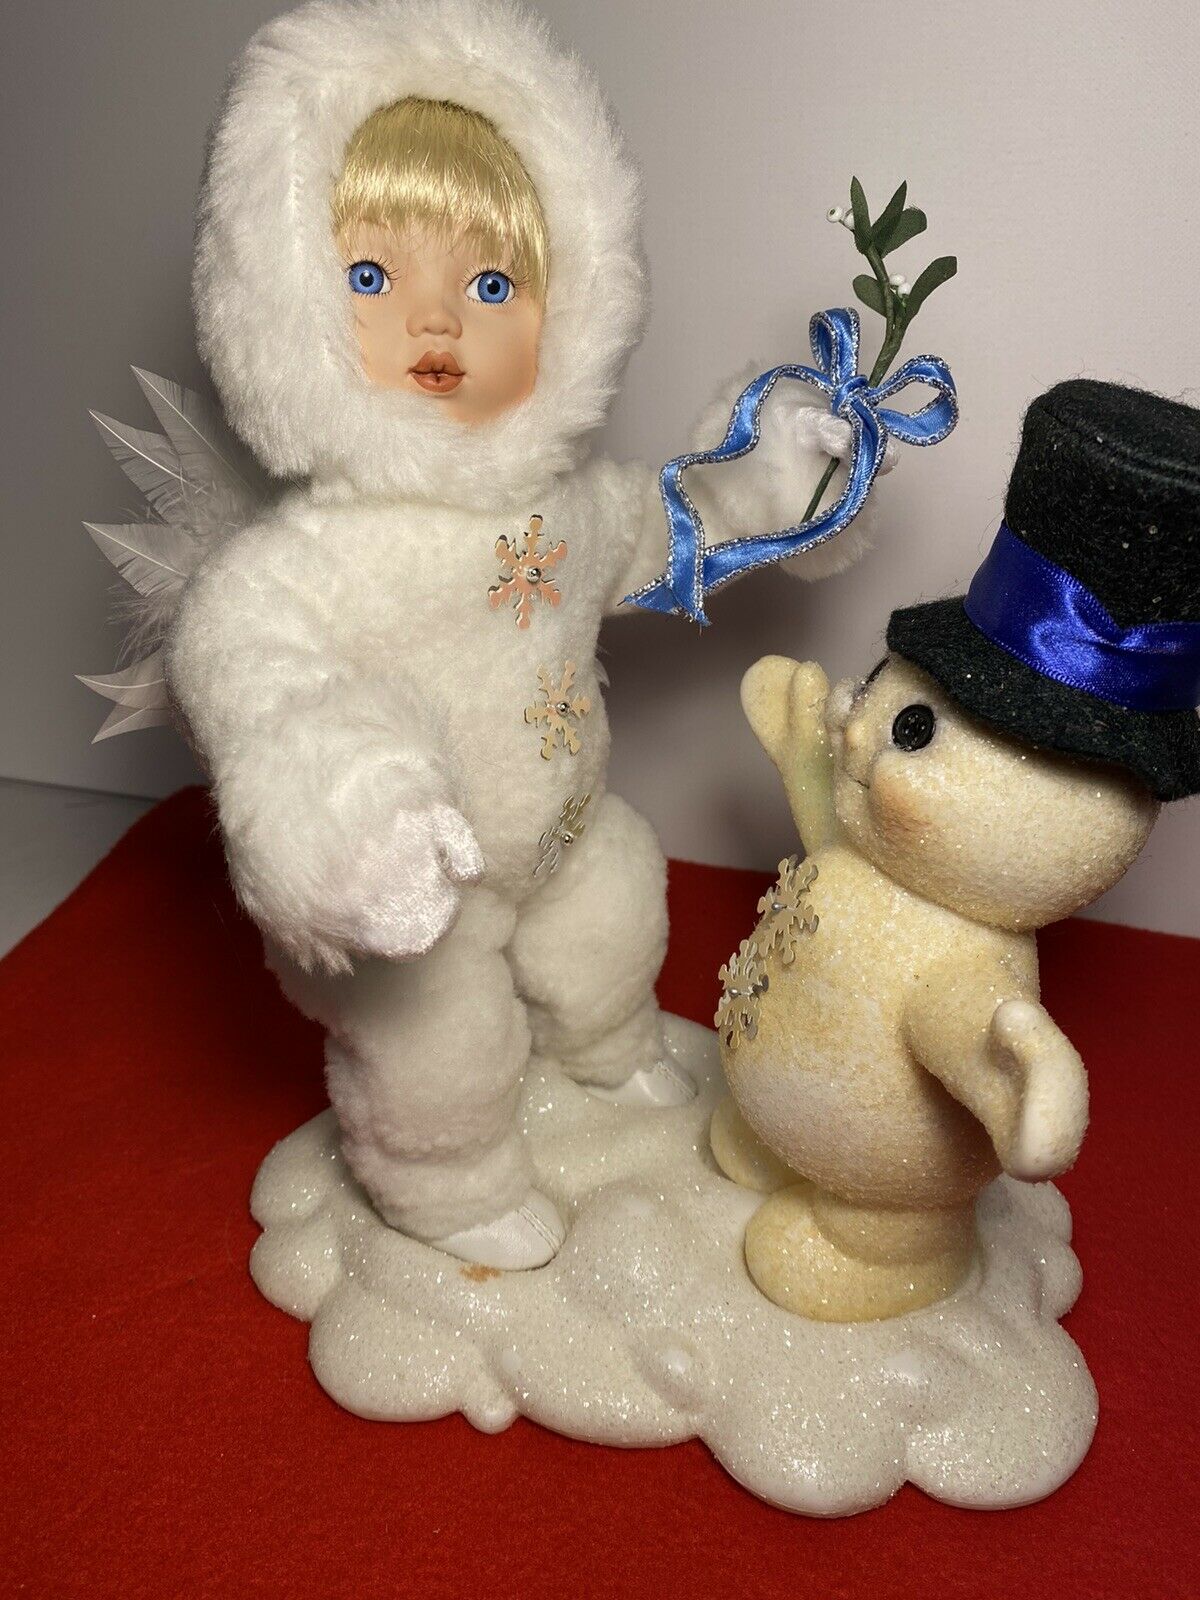 The Ashton-drake Galleries Snow Babies, "beneath The Mistletoe